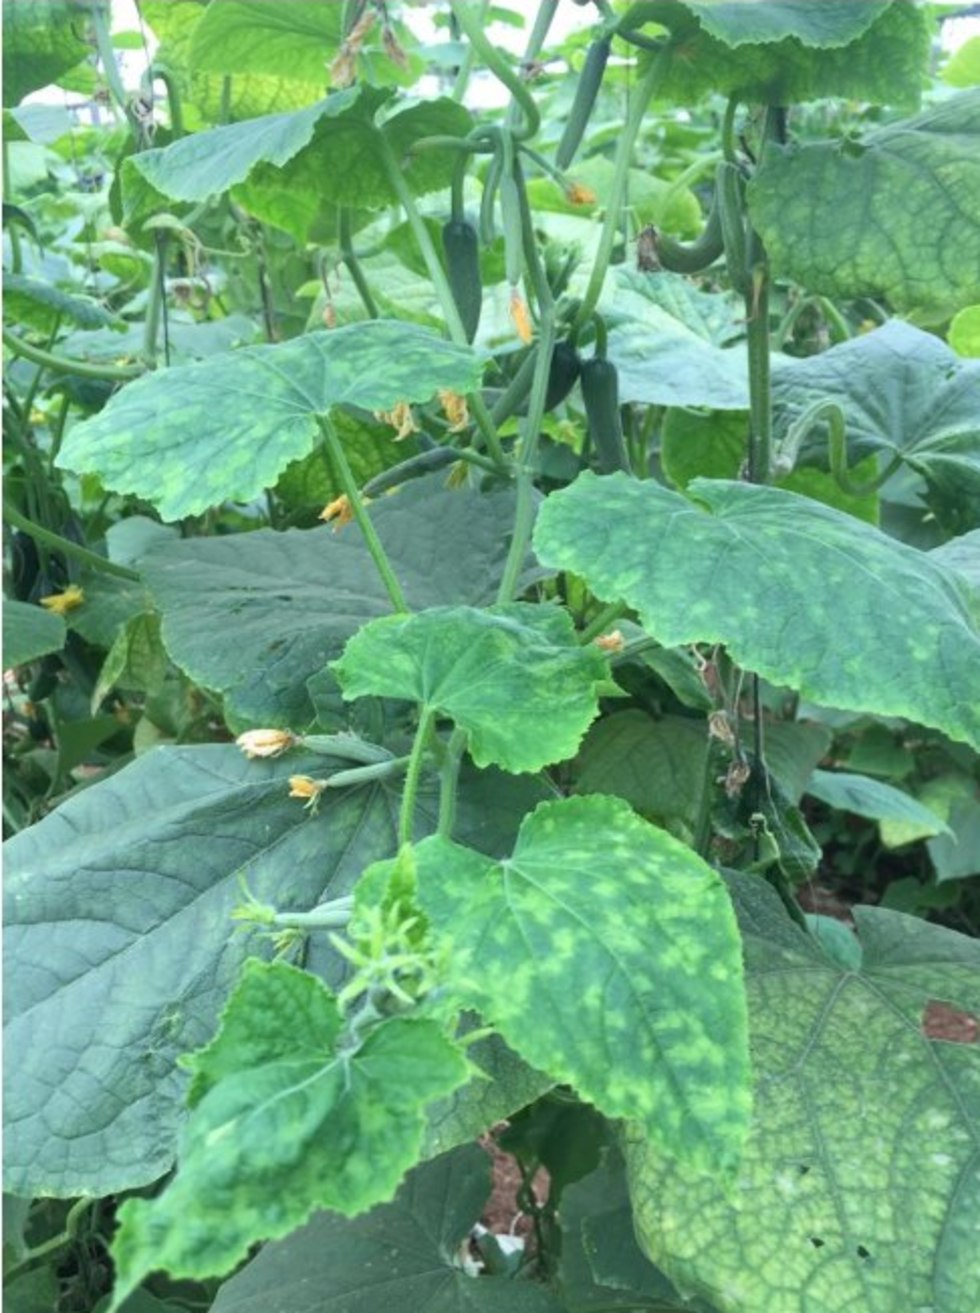 מלפפונים אוקטובר 2018 צמח המלפפון נגוע בוירוס הנימור של המלפפון ()